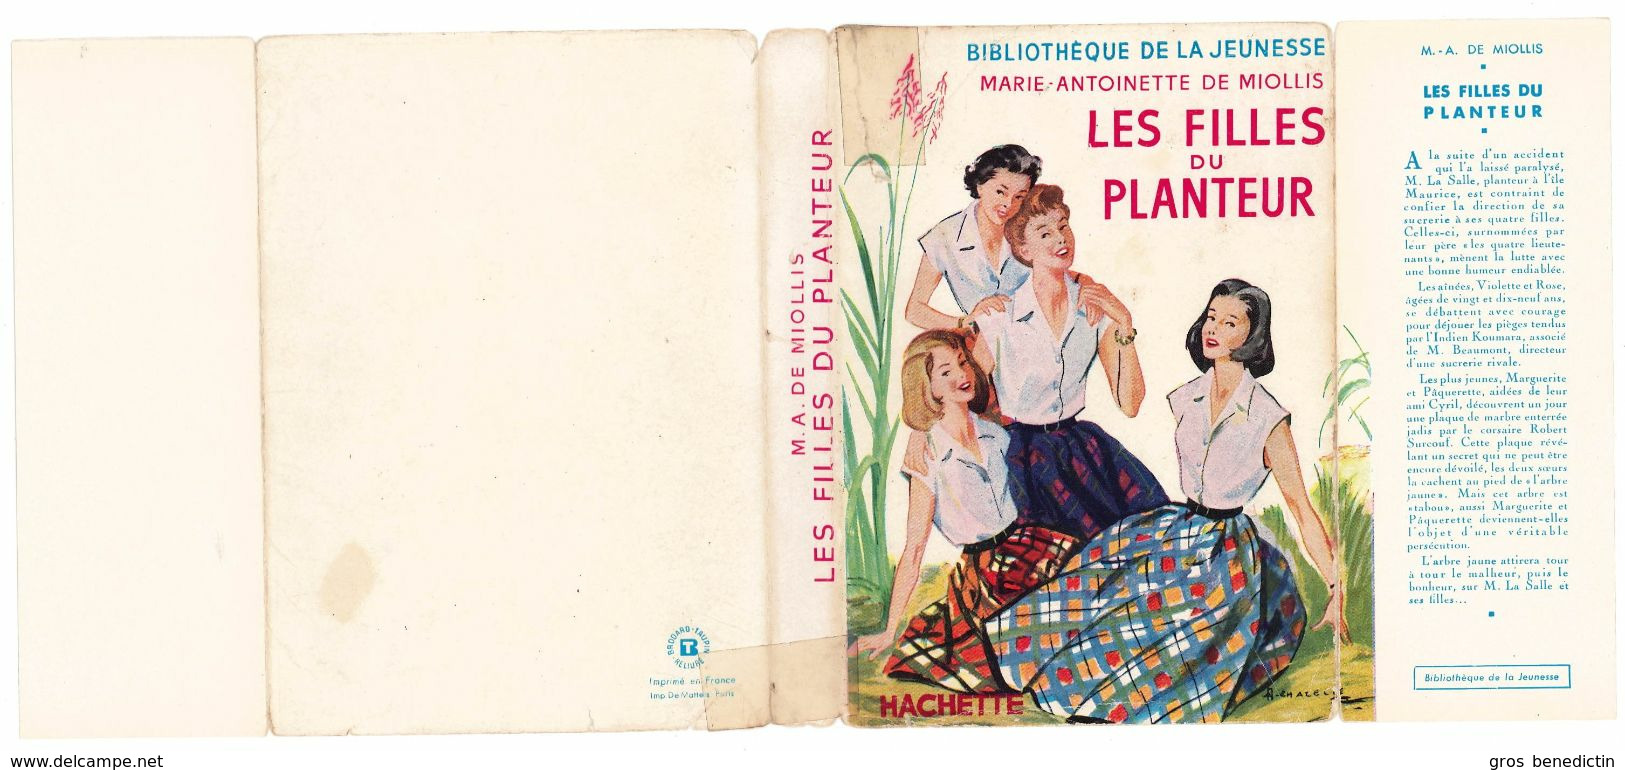 Hachette - Bib. De La Jeunesse Avec Jaquette - Marie Antoinette De Miollis - "Les Filles Du Planteur" - 1957- #Ben&BJanc - Bibliothèque De La Jeunesse